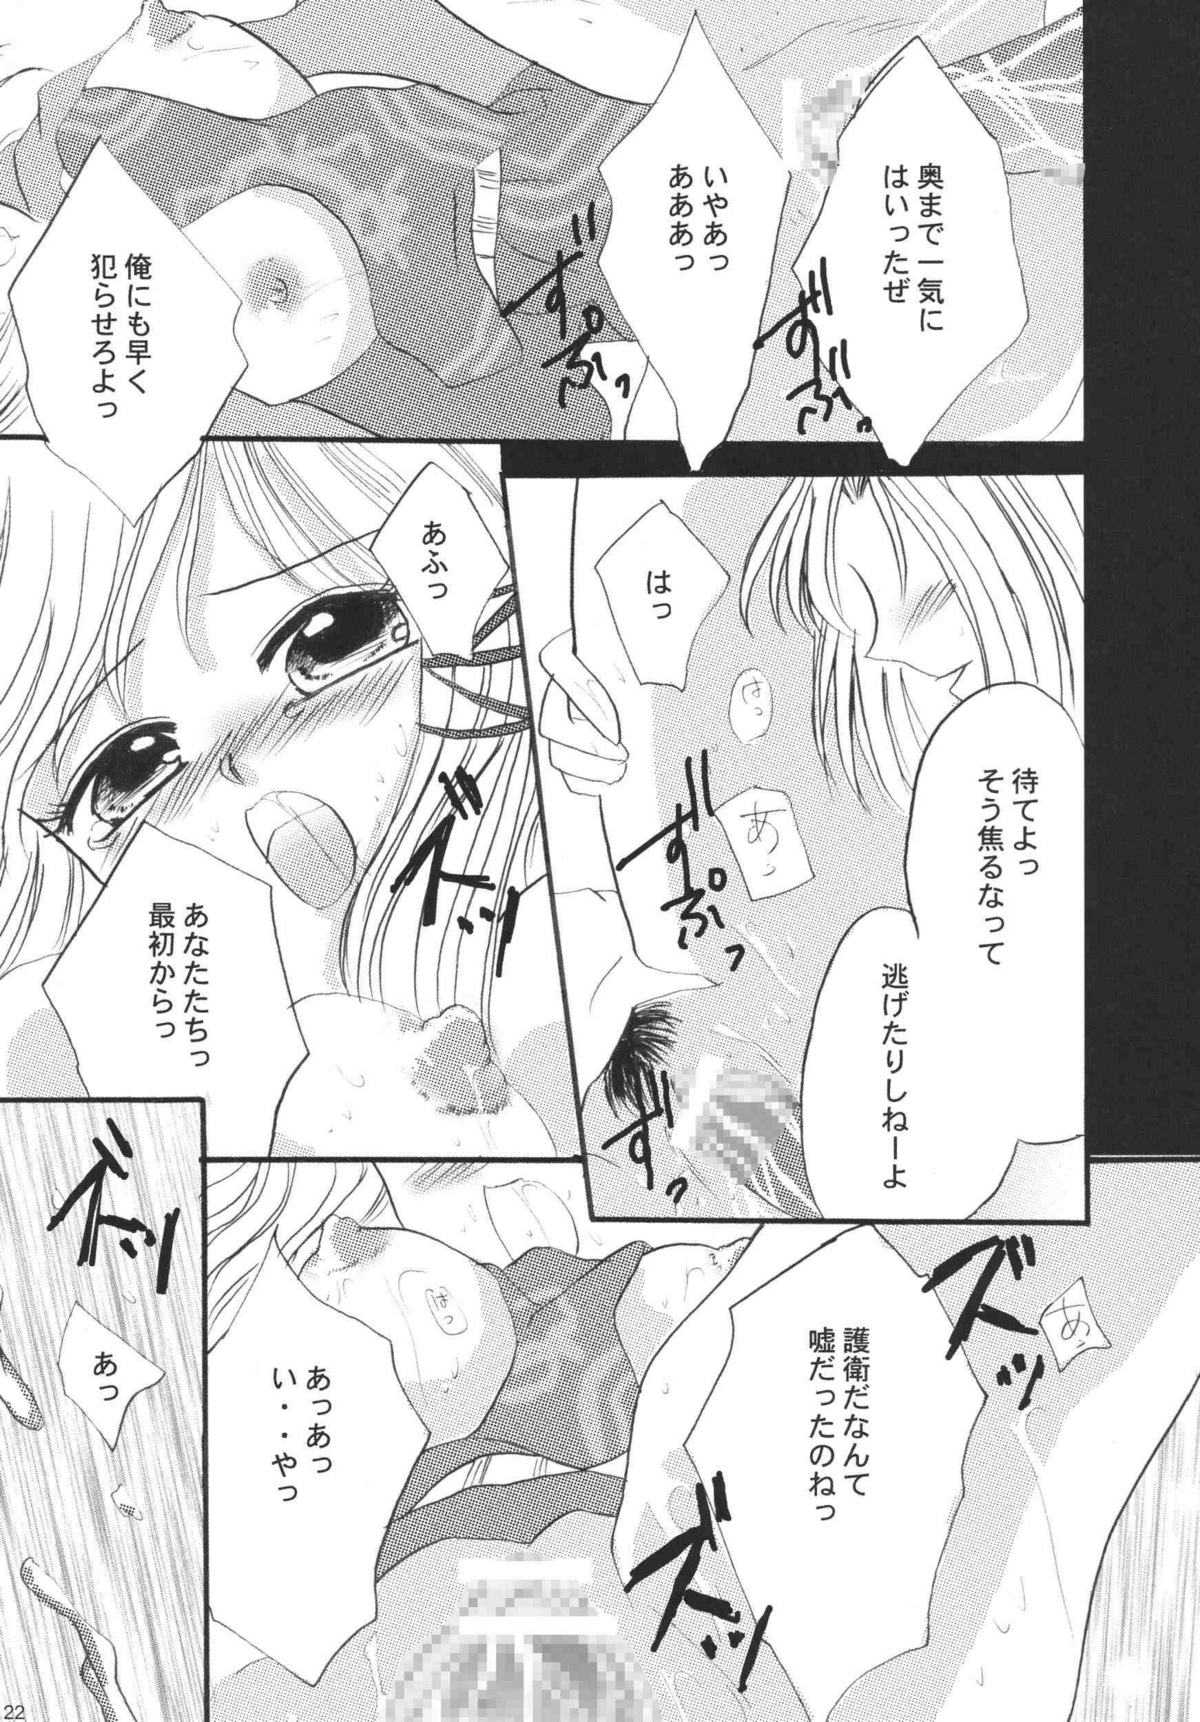 [Ichigo Milk] Gazing at Milk - Mithra and Elvaan Ver. (Misueru Miruku - Mithra and Elvaan Ver.) (みすえるみるく - Mithra and Elvaan Ver.)